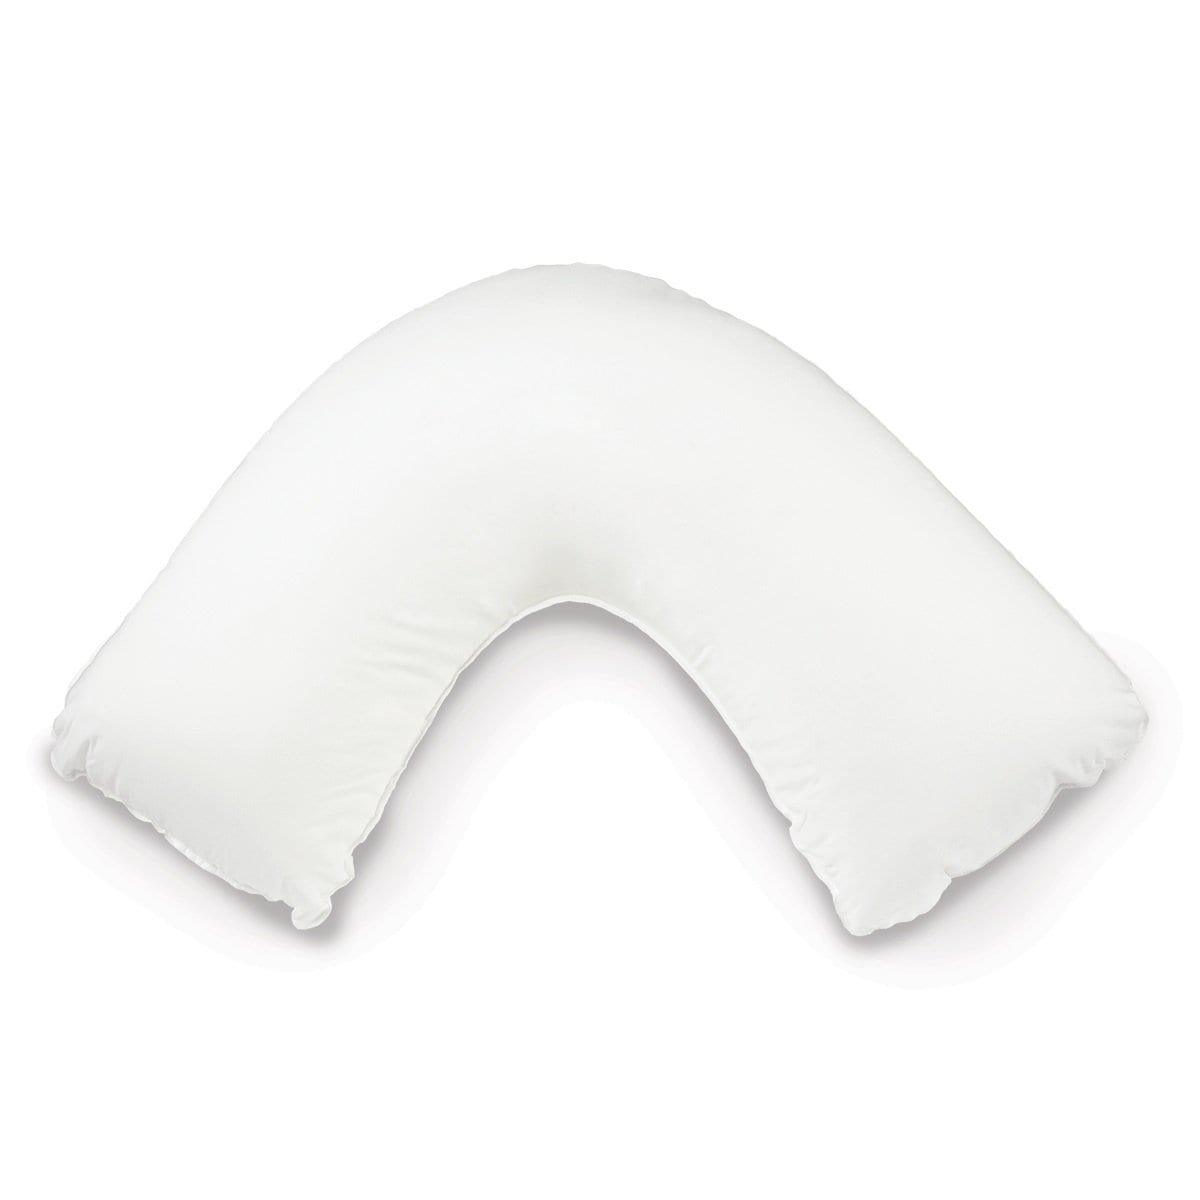 V shape pillows